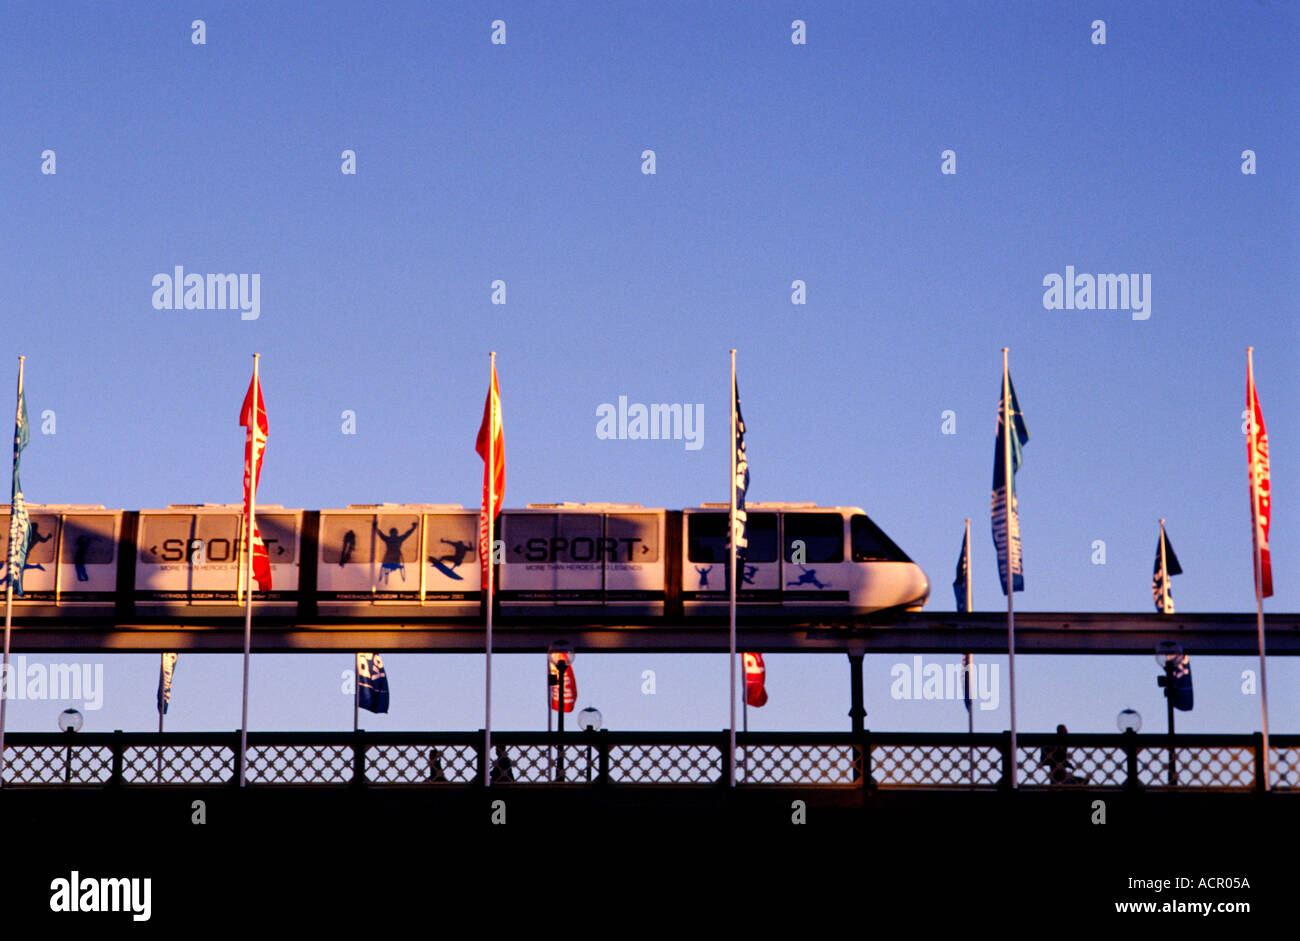 Sydney Monorail mit dekorativen Fahnen und klaren blauen Himmel Bild mit Textfreiraum Stockfoto